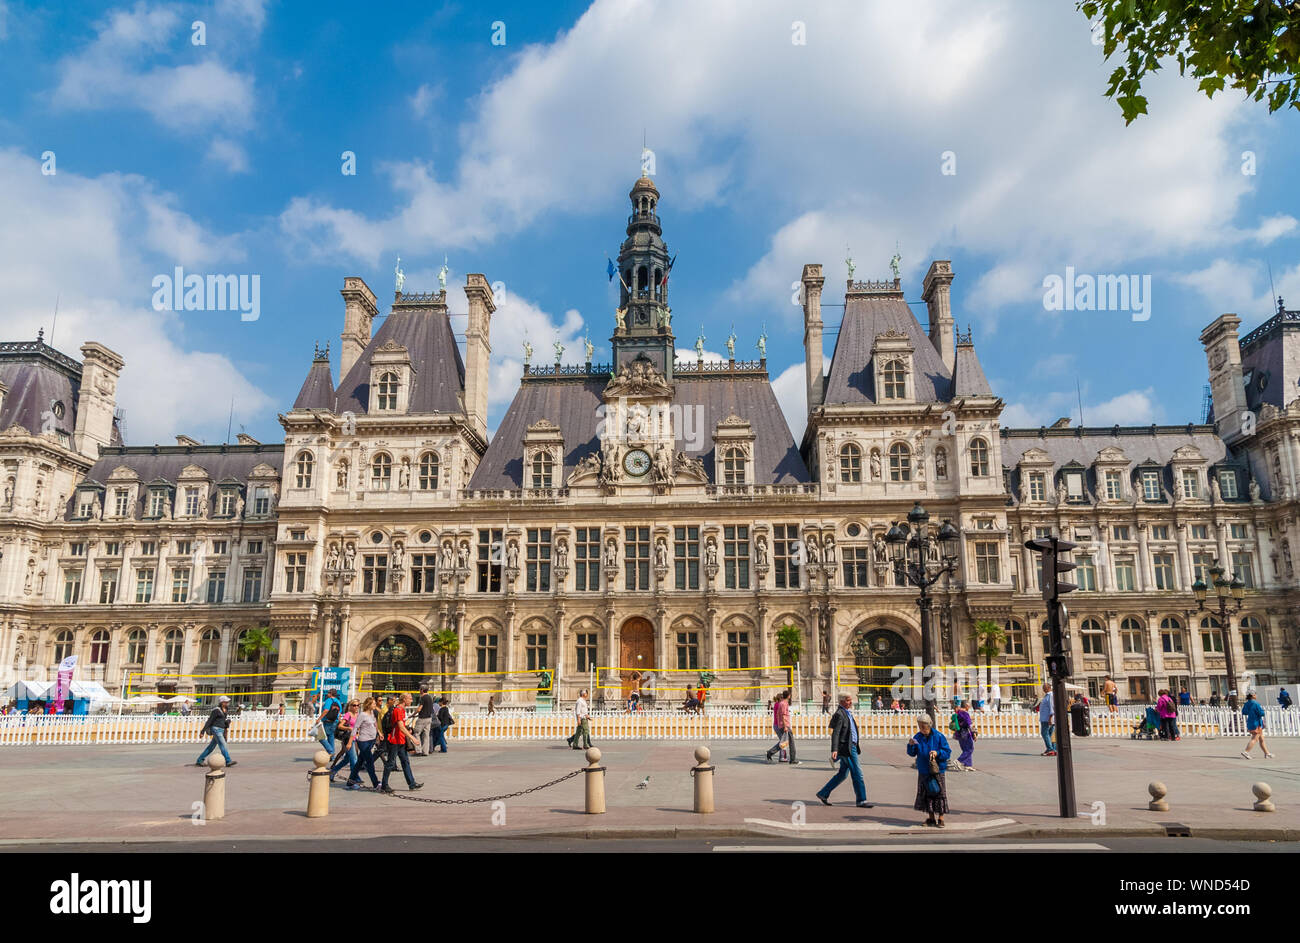 Belle vue de l'Hôtel de Ville, l'Hôtel de Ville de Paris, France. Le bâtiment historique est le logement de l'administration locale, le Maire de Paris et de... Banque D'Images